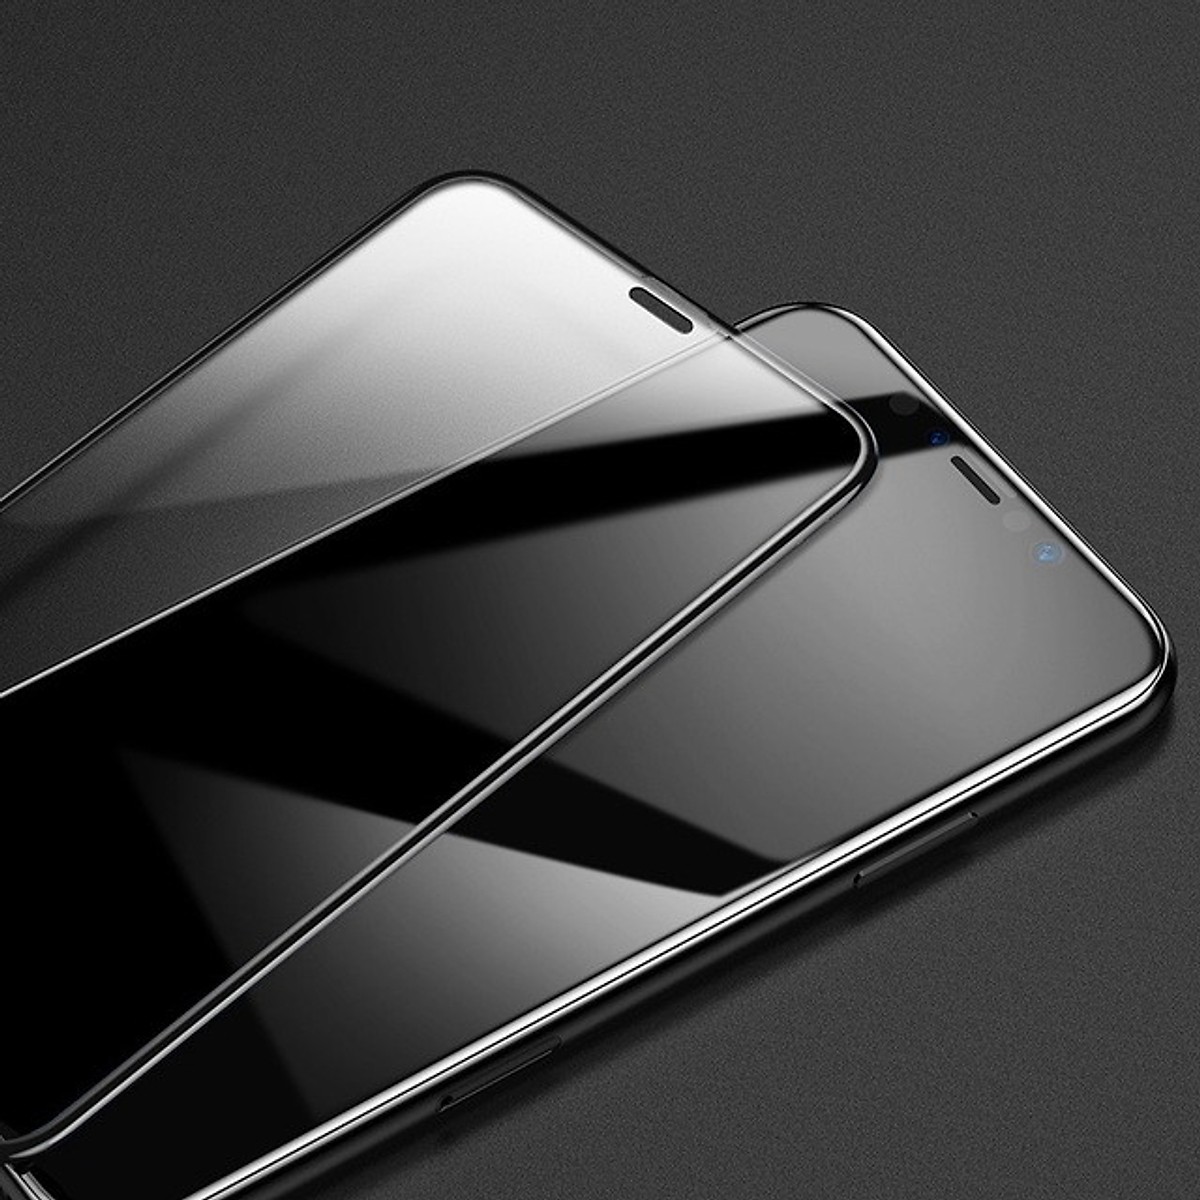 Bộ 2 Miếng dán kính cường lực Full 3D cho iPhone 11 Pro Max / iPhone Xs Max hiệu Baseus bảo vệ màng loa chống bụi (mỏng 0.3mm, Full màn 3D, Phủ Nano) - Hàng nhập khẩu